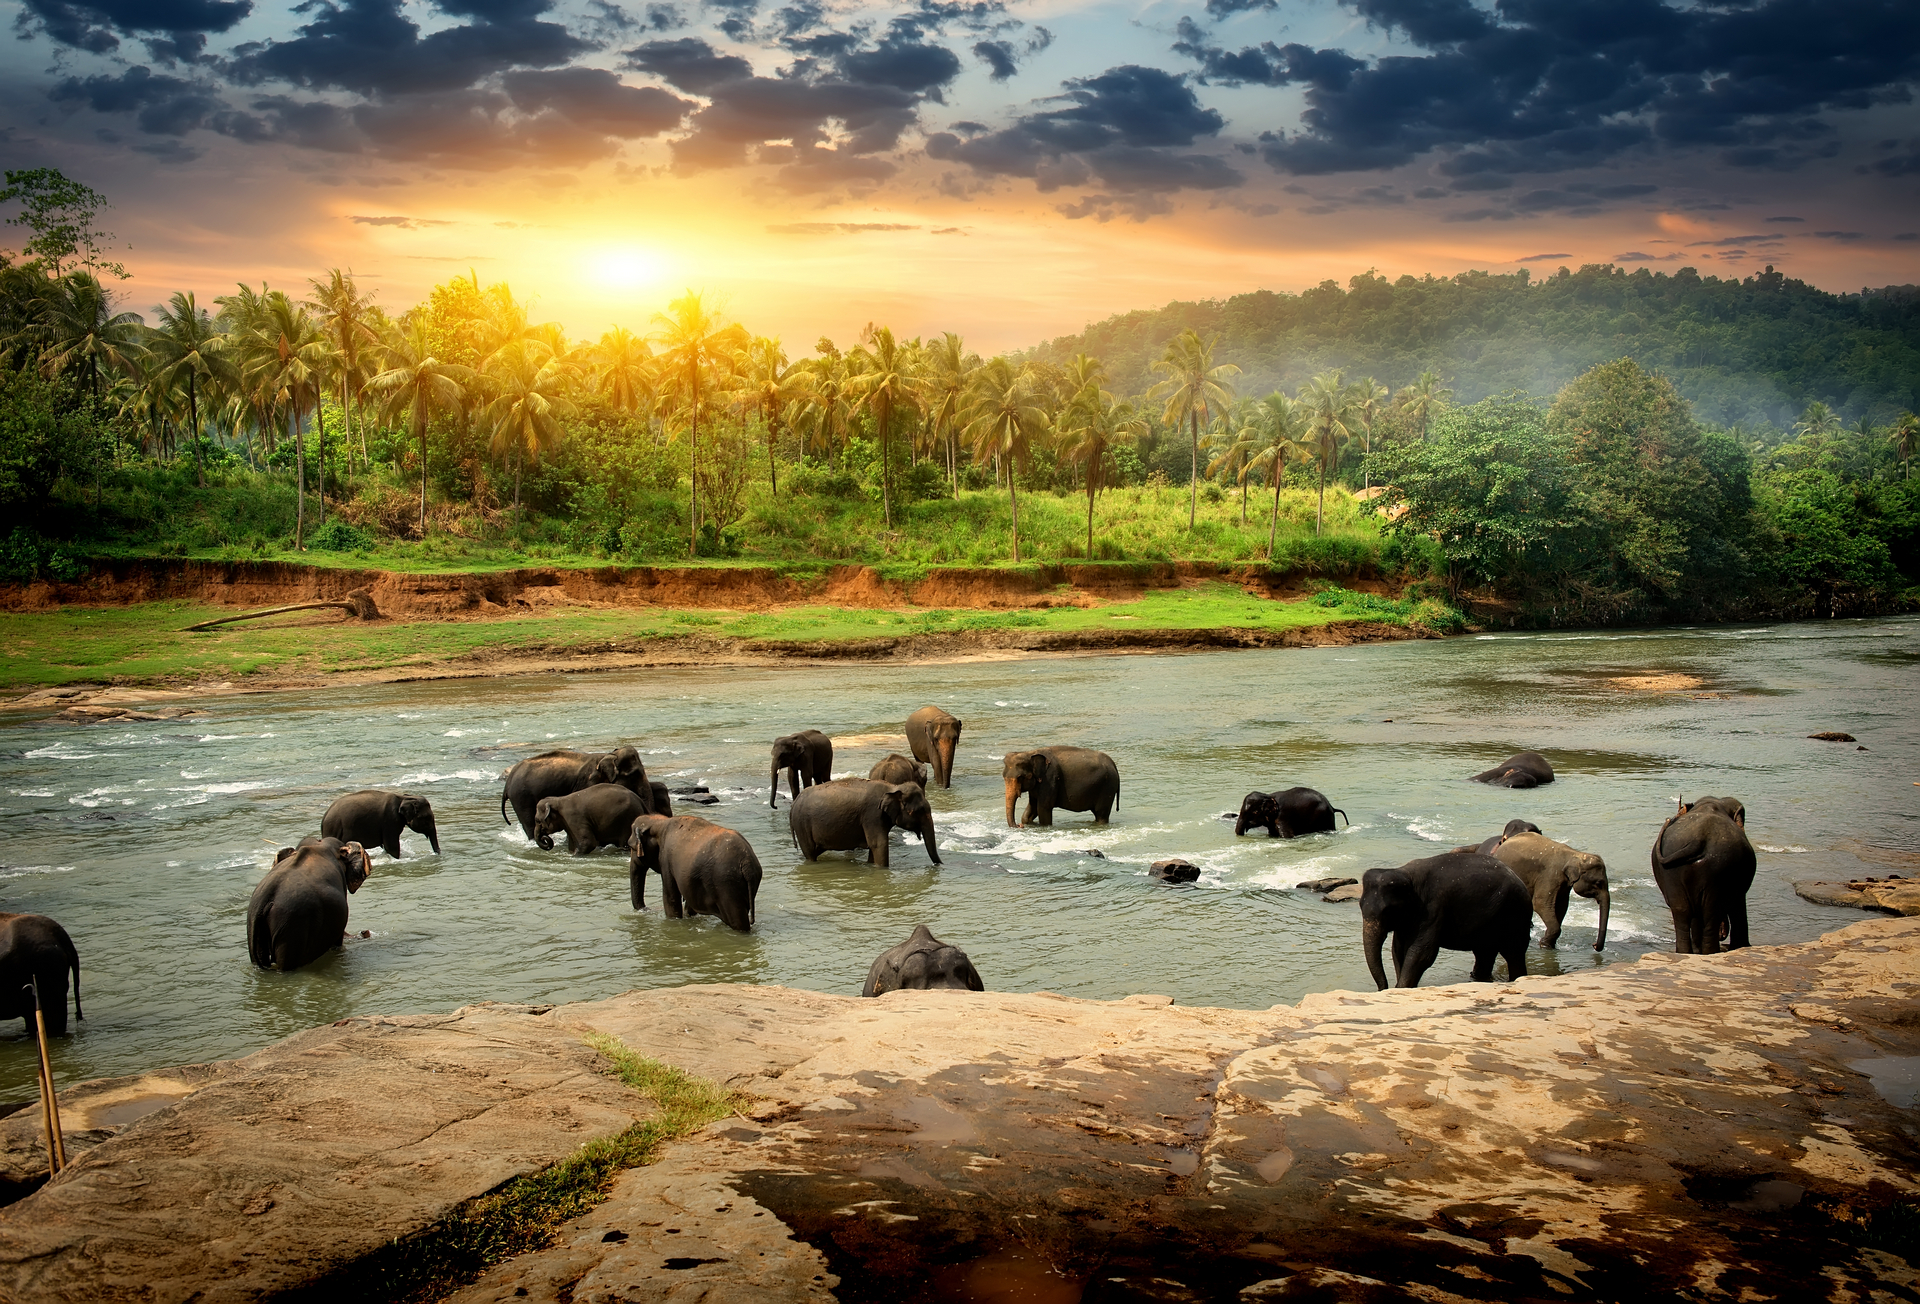 Скачать обои бесплатно Азиатский Слон, Слоны, Животные картинка на рабочий стол ПК